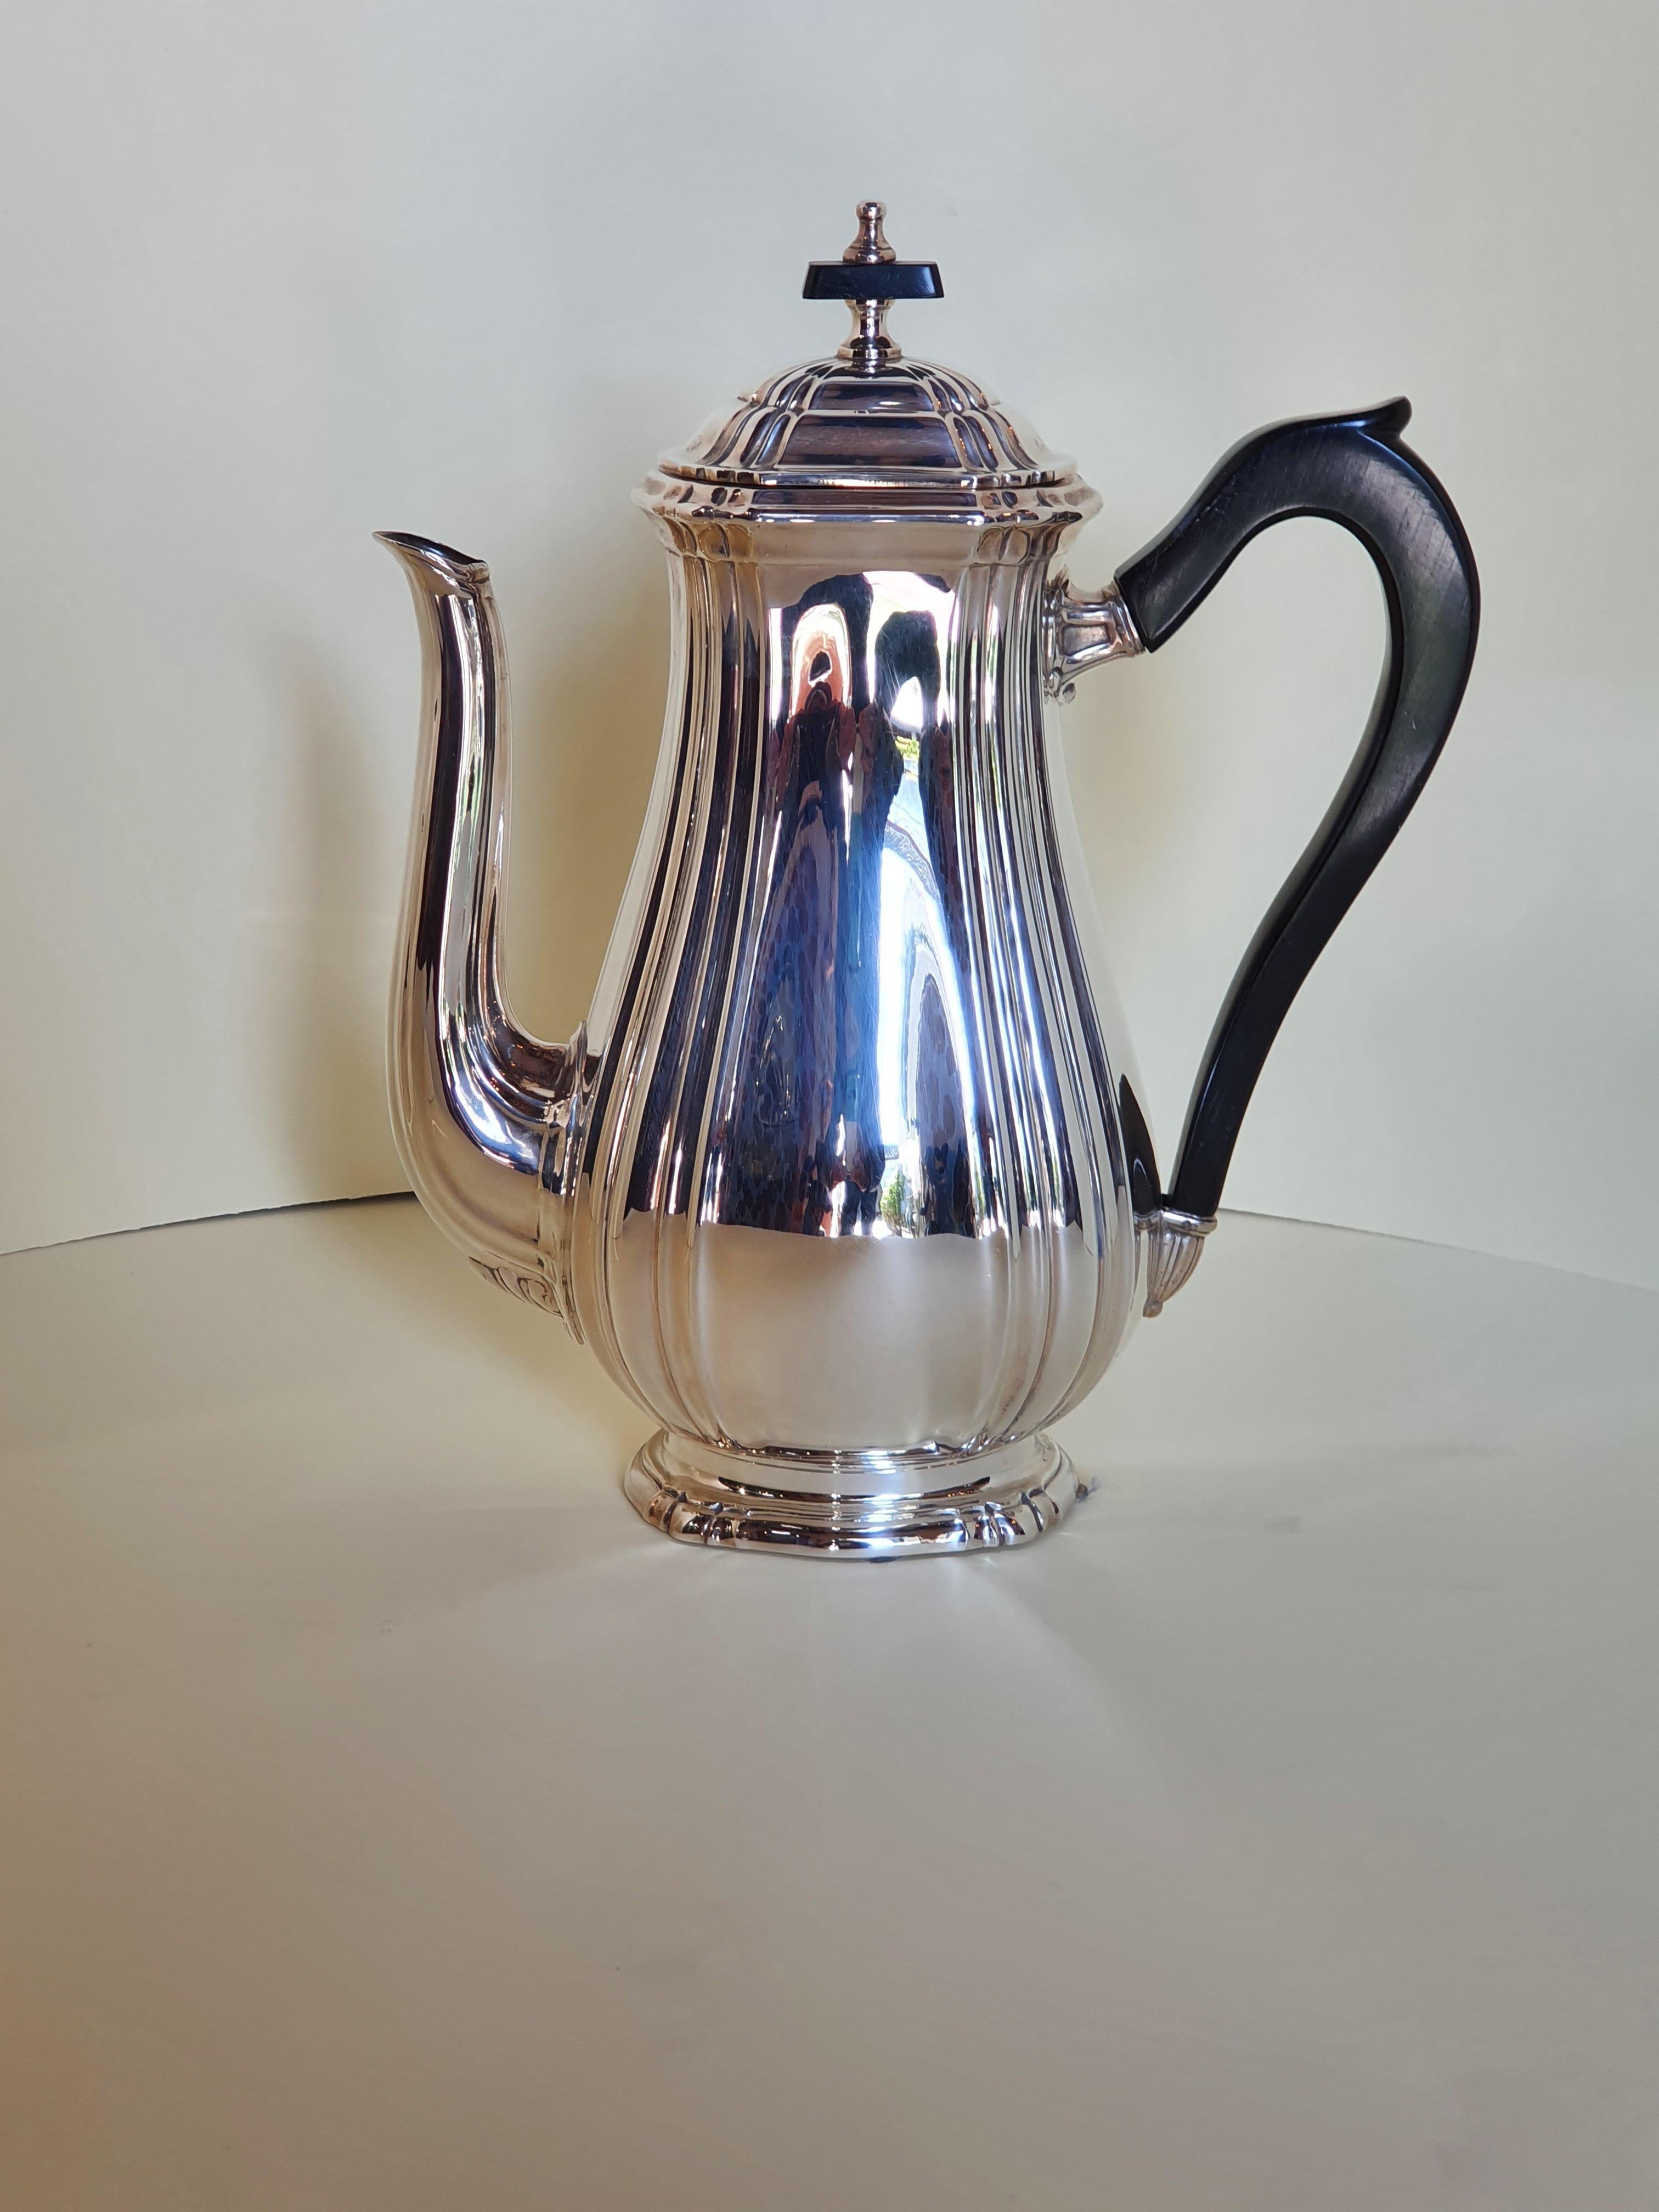 Ein elegantes Tee- und Kaffeeservice im georgianischen Stil aus handgemeißeltem Sterlingsilber des italienischen Silberschmieds Argenteria Auge.
Besteht aus 4 Objekten: einer Teekanne, einer Kaffeekanne, einer Zuckerdose mit Deckel und einem